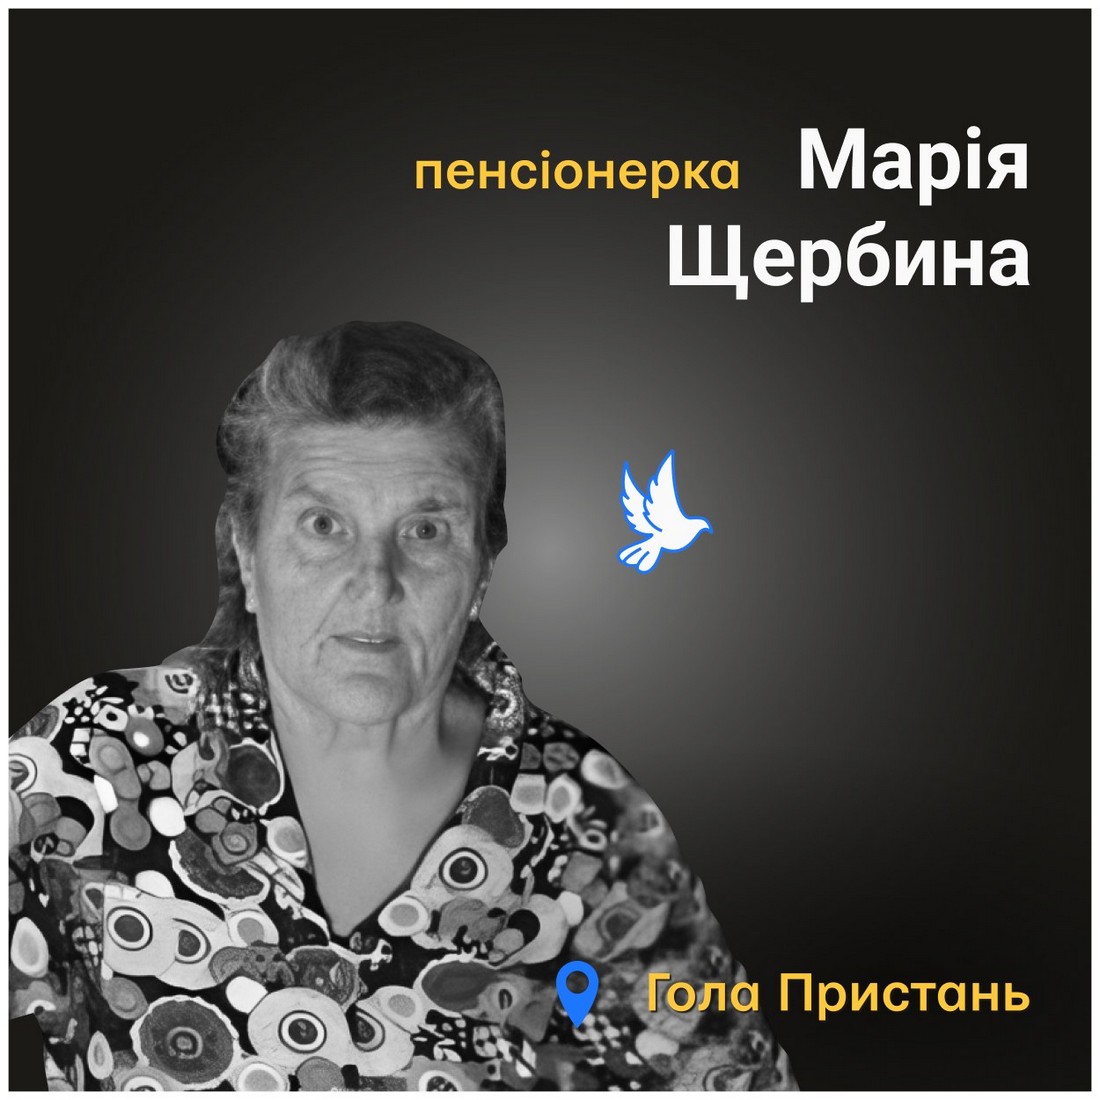 Меморіал: вбиті росією. Марія Щербина, 84 років, Гола Пристань